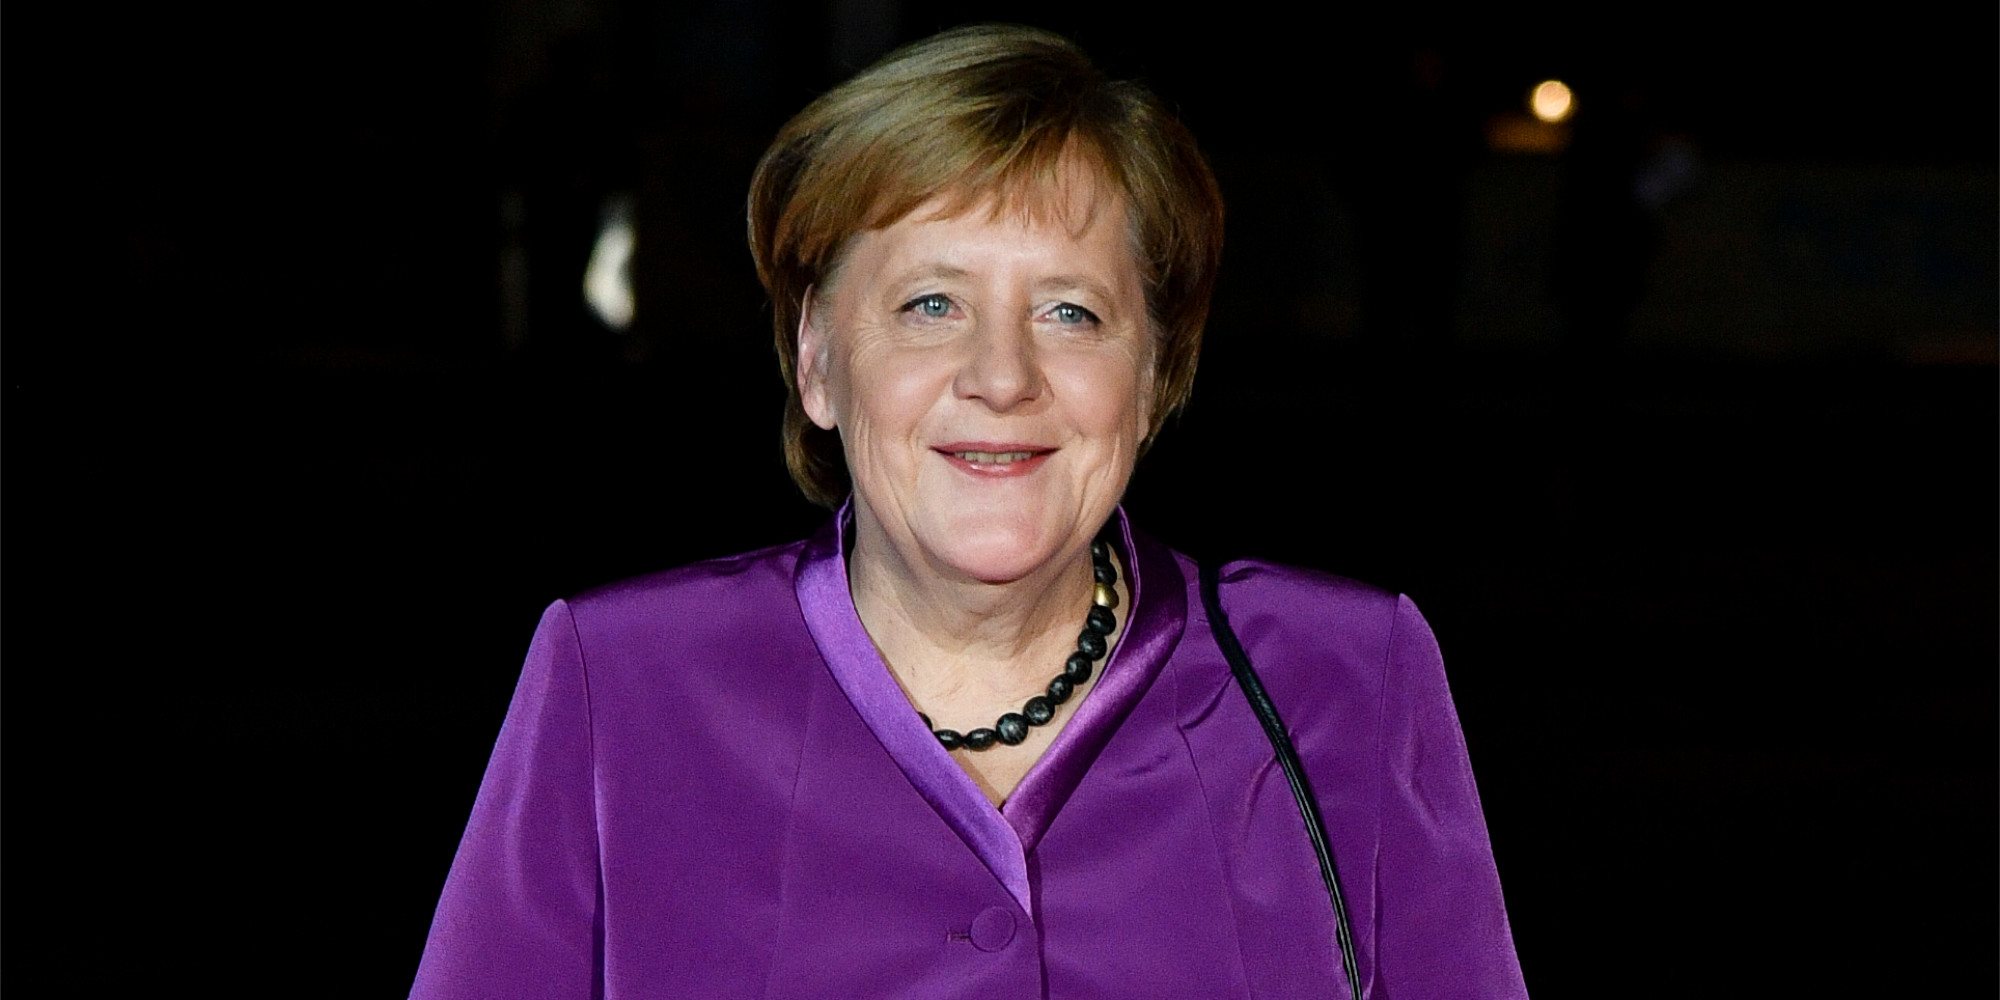 Así es Angela Merkel, la política que rompió barreras y se convirtió en una de las mujeres más poderosas del mundo